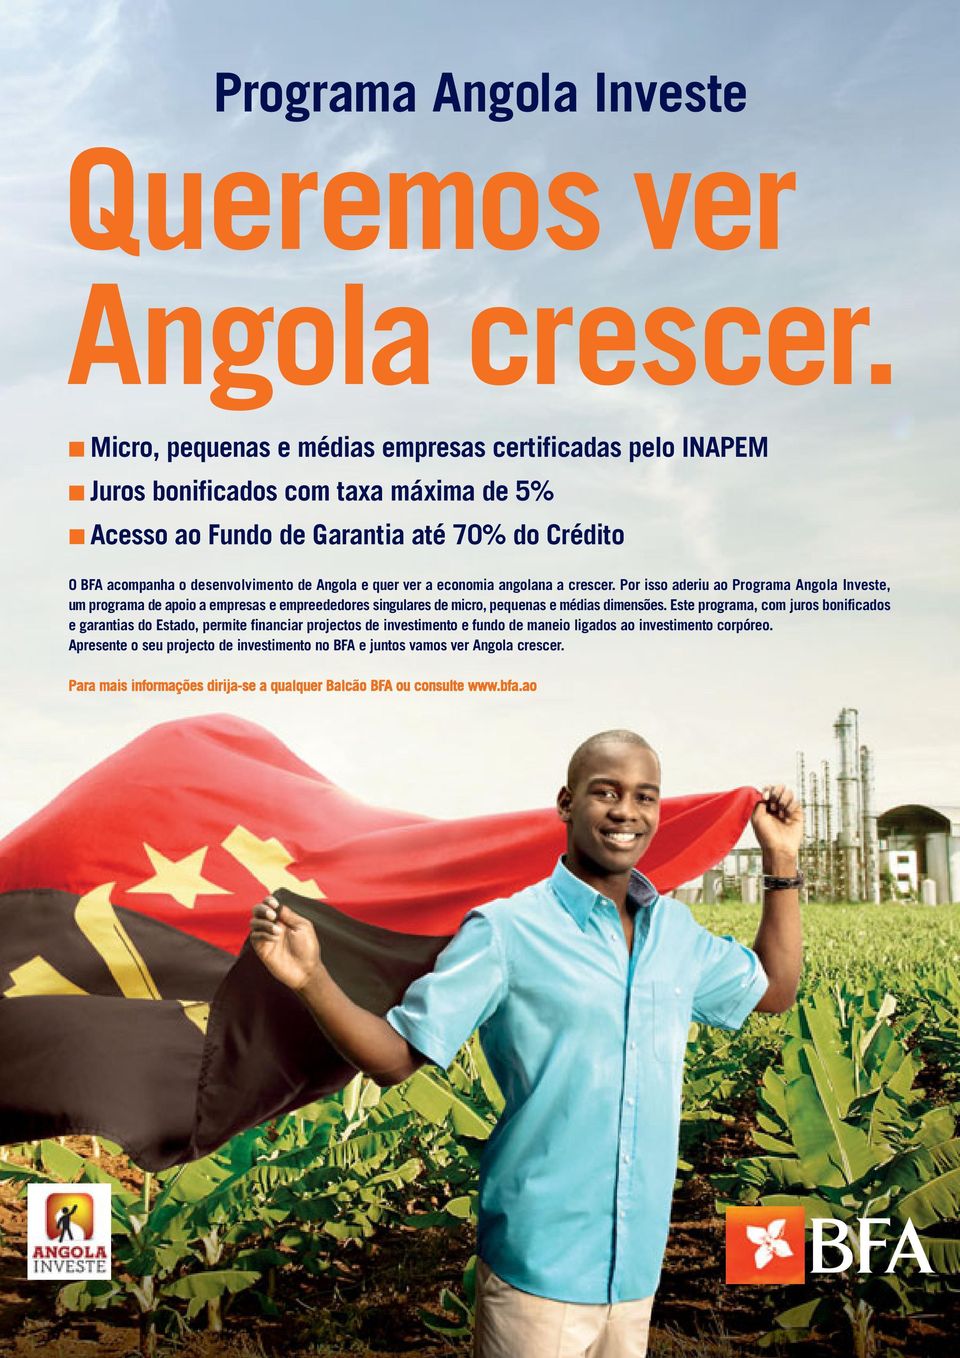 Angola e quer ver a economia angolana a crescer.